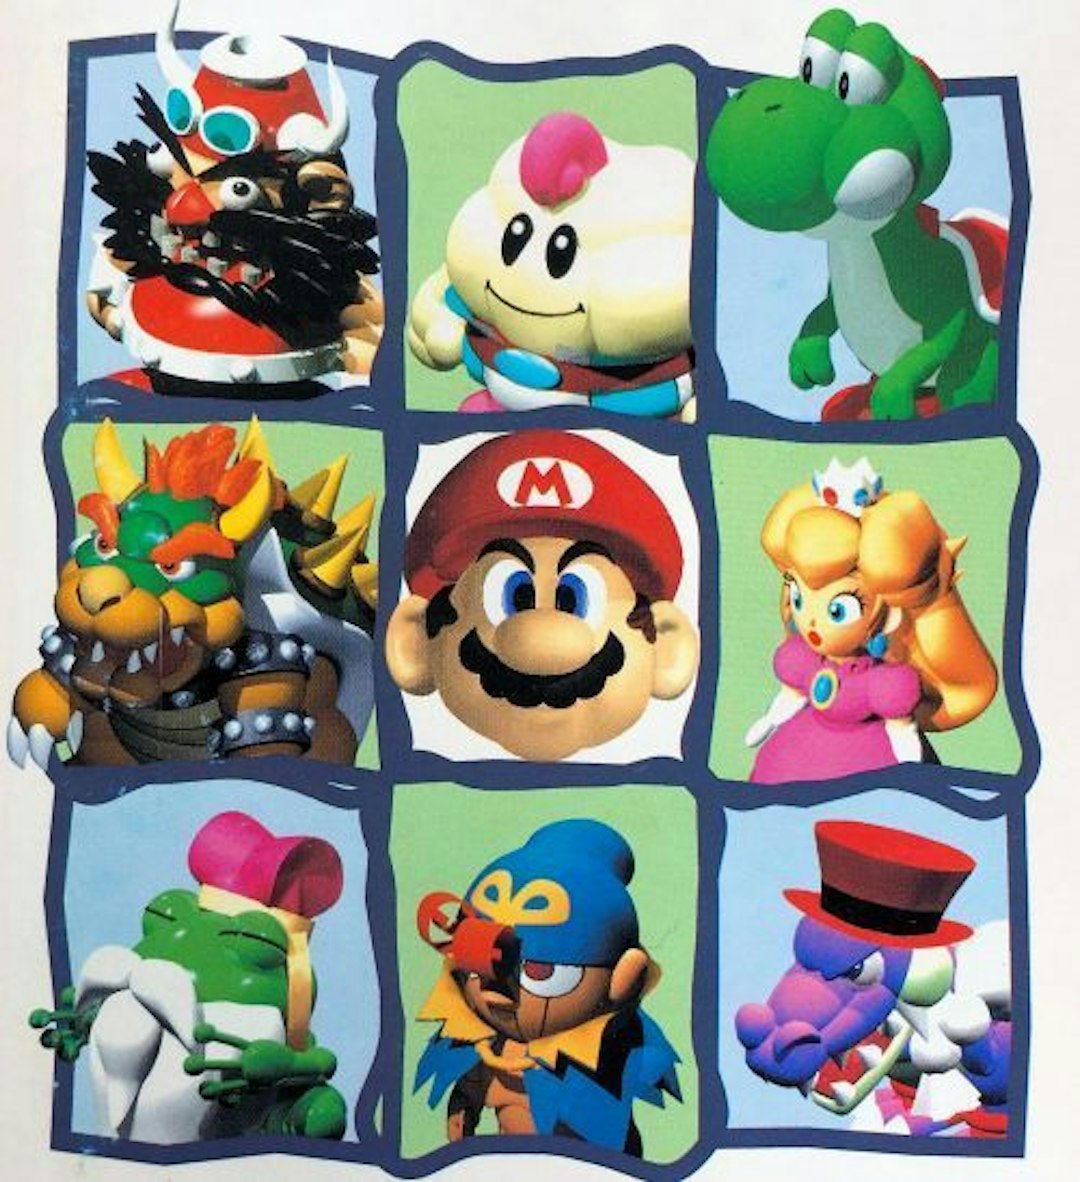 featured image - Los 10 mejores juegos de rol de Mario clasificados por ventas